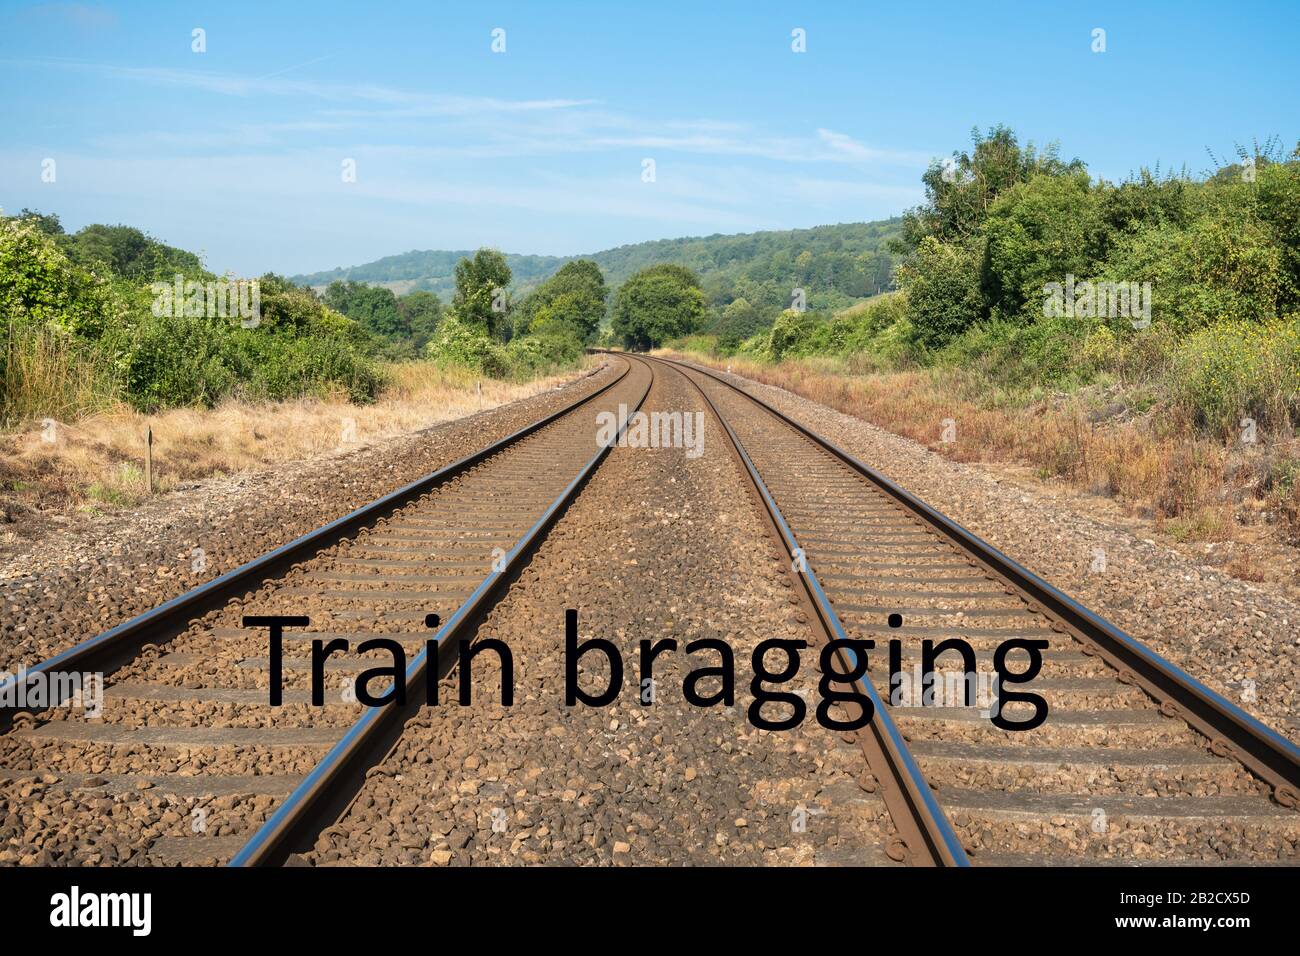 Imagen de concepto de tren bragging: Uso de trenes en lugar de volar para reducir los desplazamientos por emisiones de carbono Foto de stock